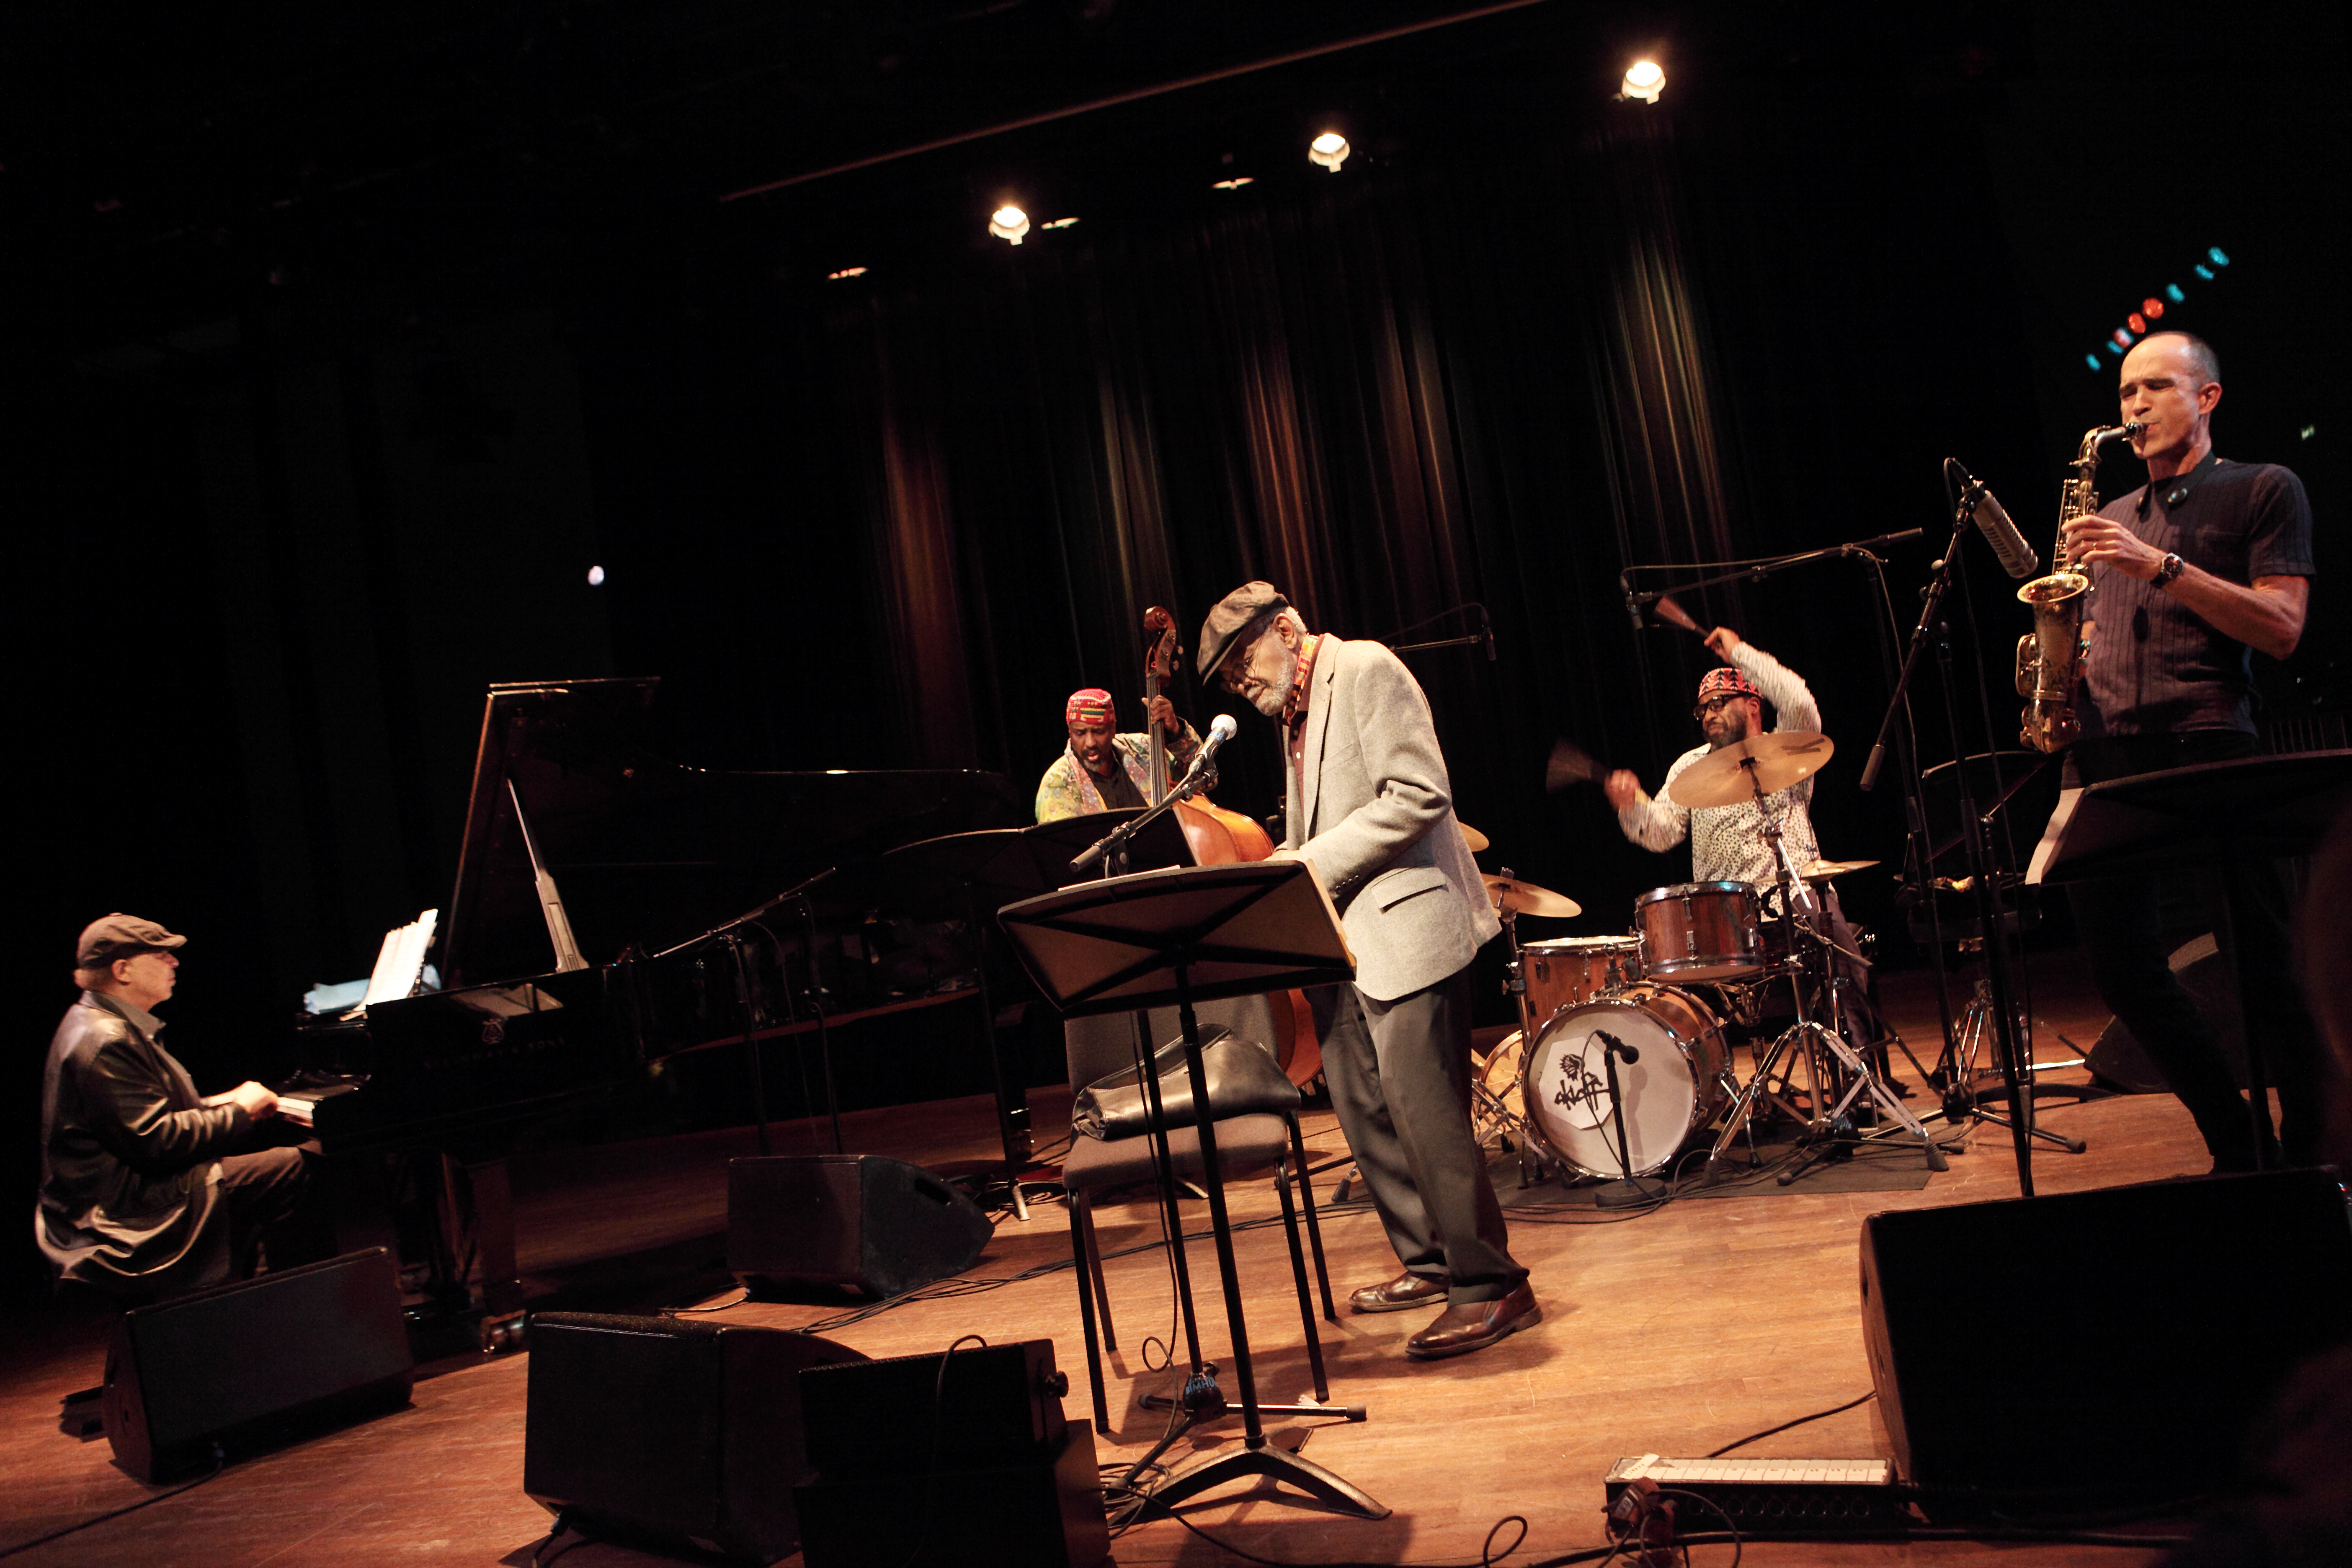 Le poète Amiri Baraka se produit avec un groupe de musiciens de jazz sur scène